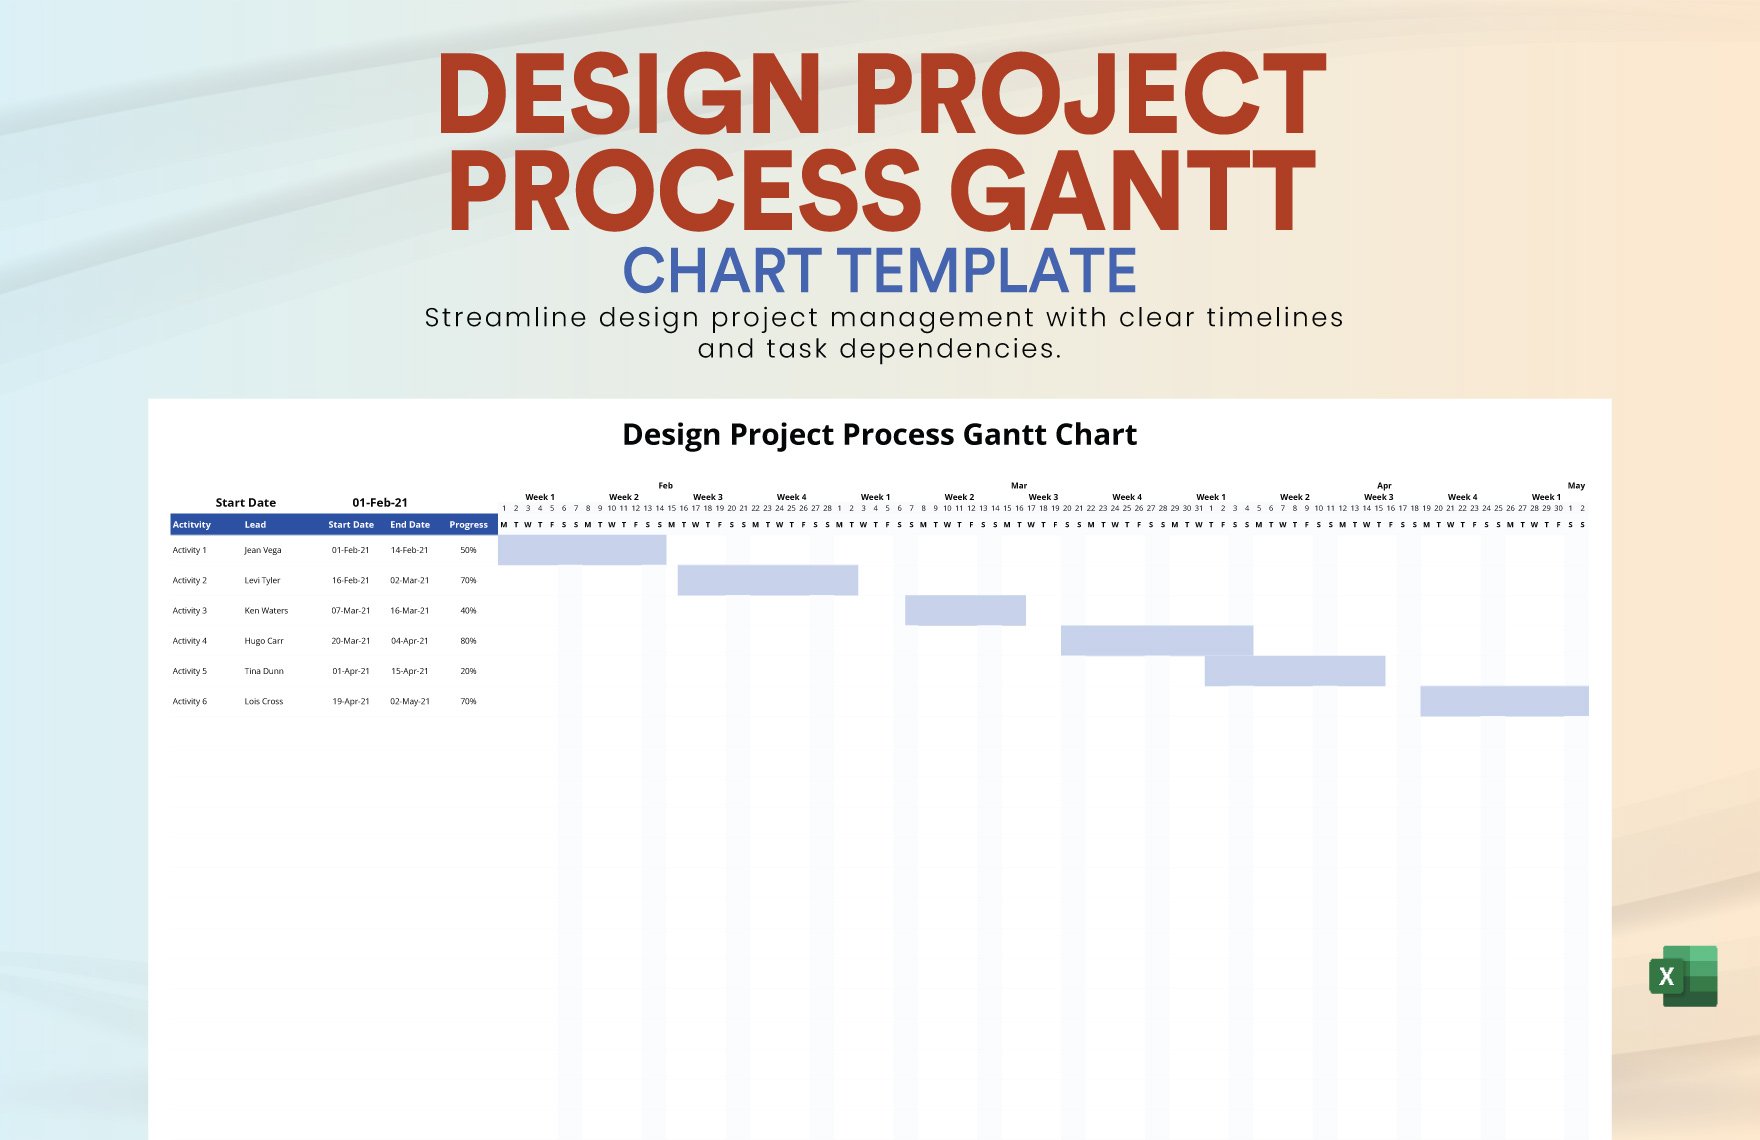 Design Project Process Gantt Chart Template